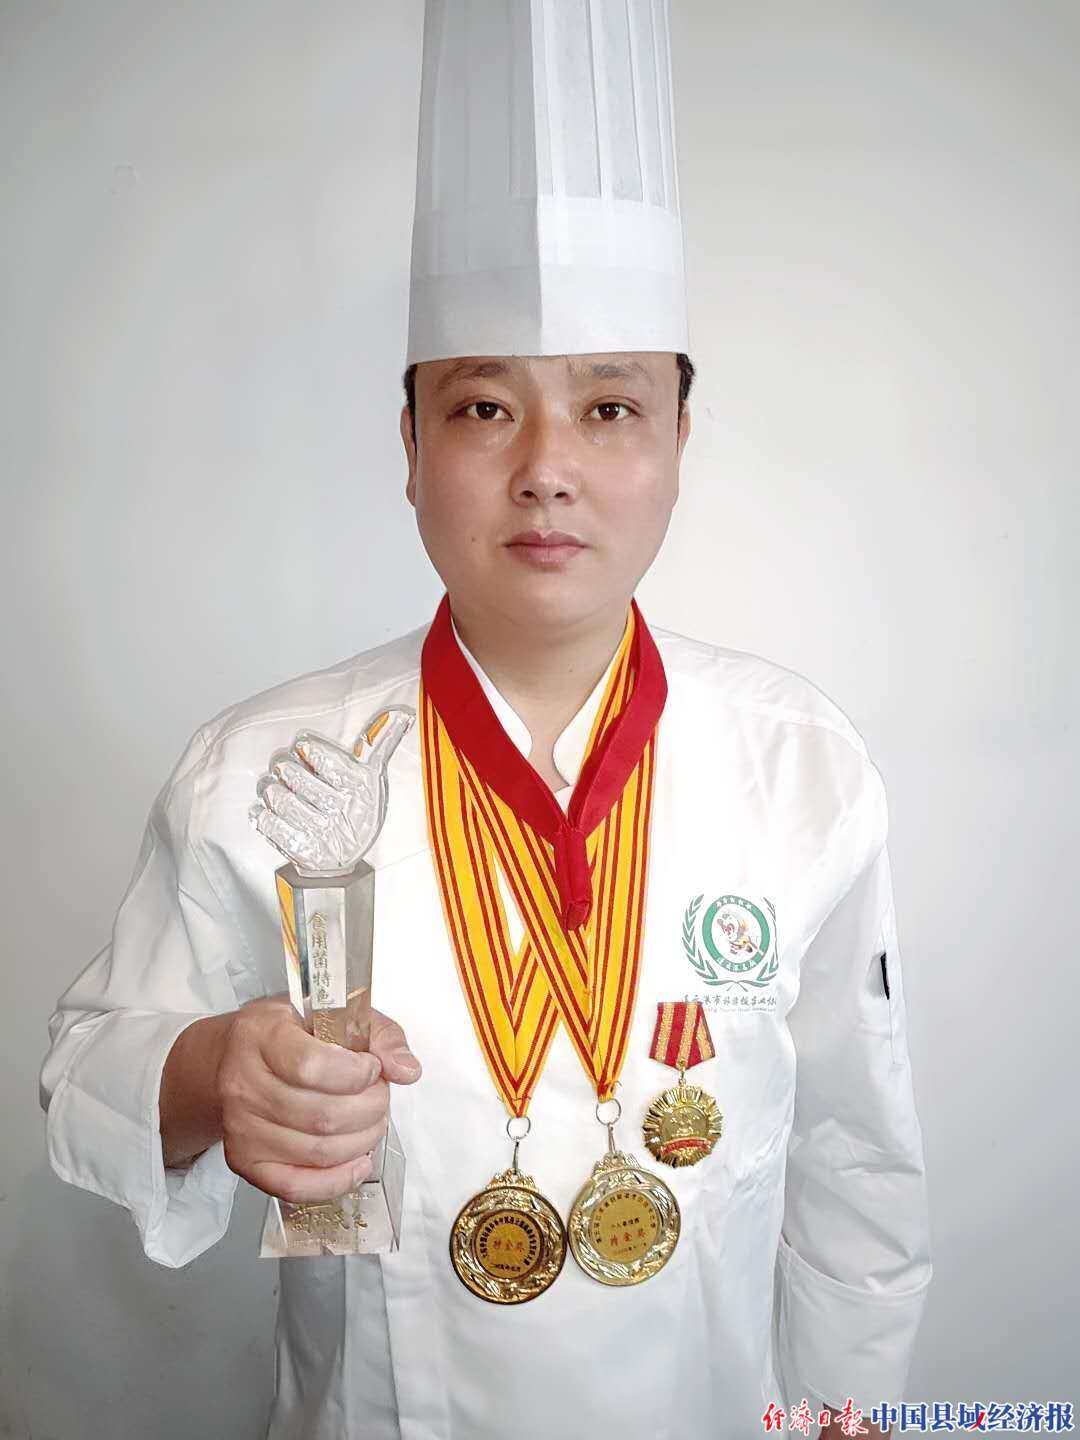 中华饮食行业资讯：中国名厨李新获奥斯卡名厨金人奖并受聘出任中国顶级厨师美食协会荣誉会长一职 - 知乎